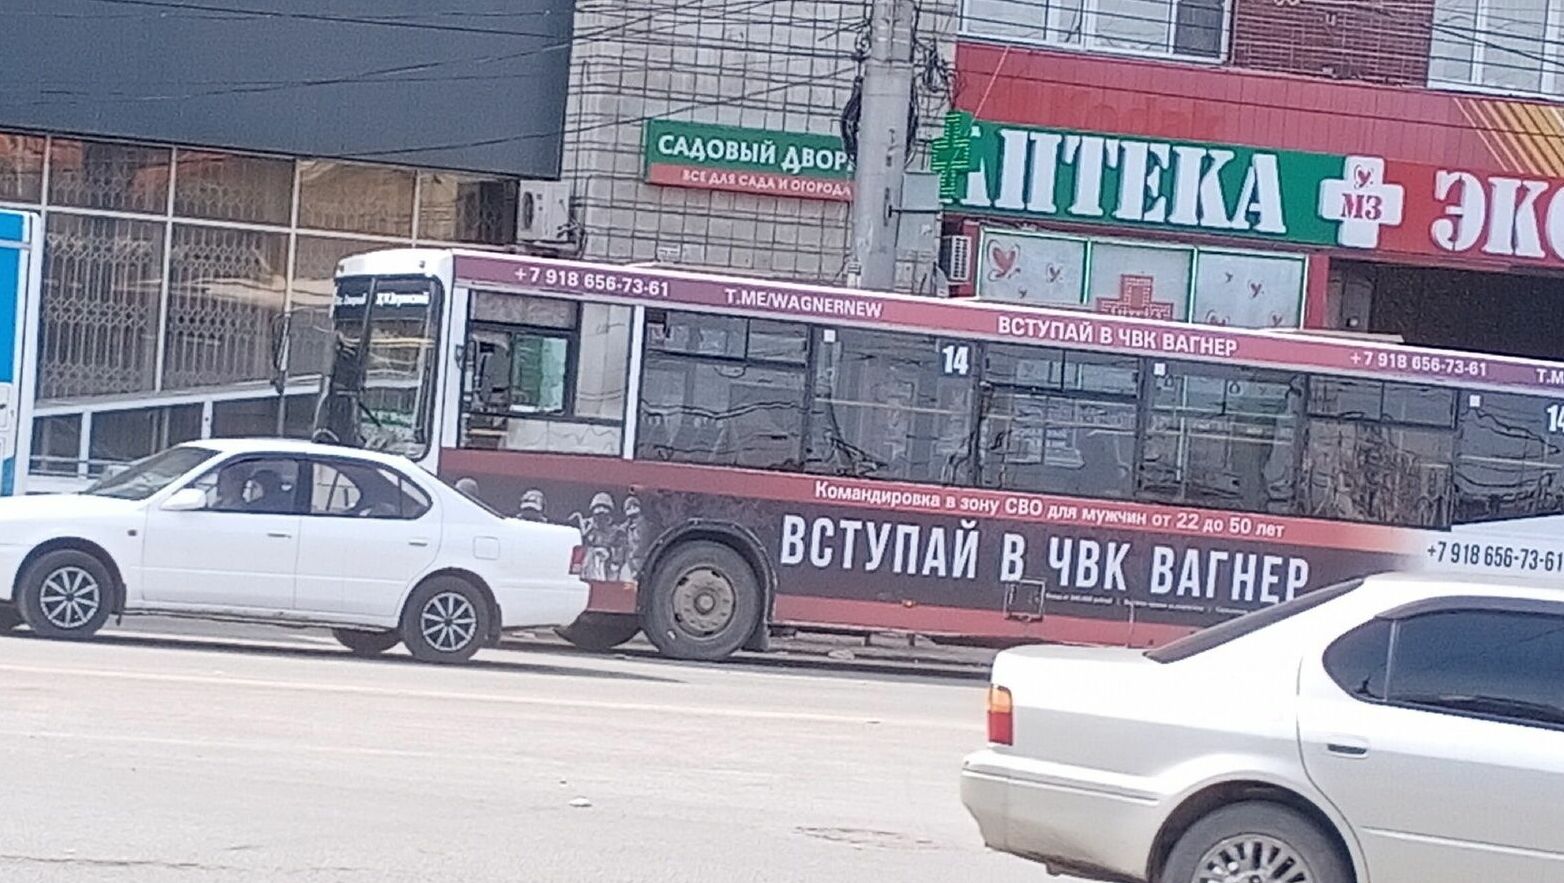 Автобус с рекламой Вагнера